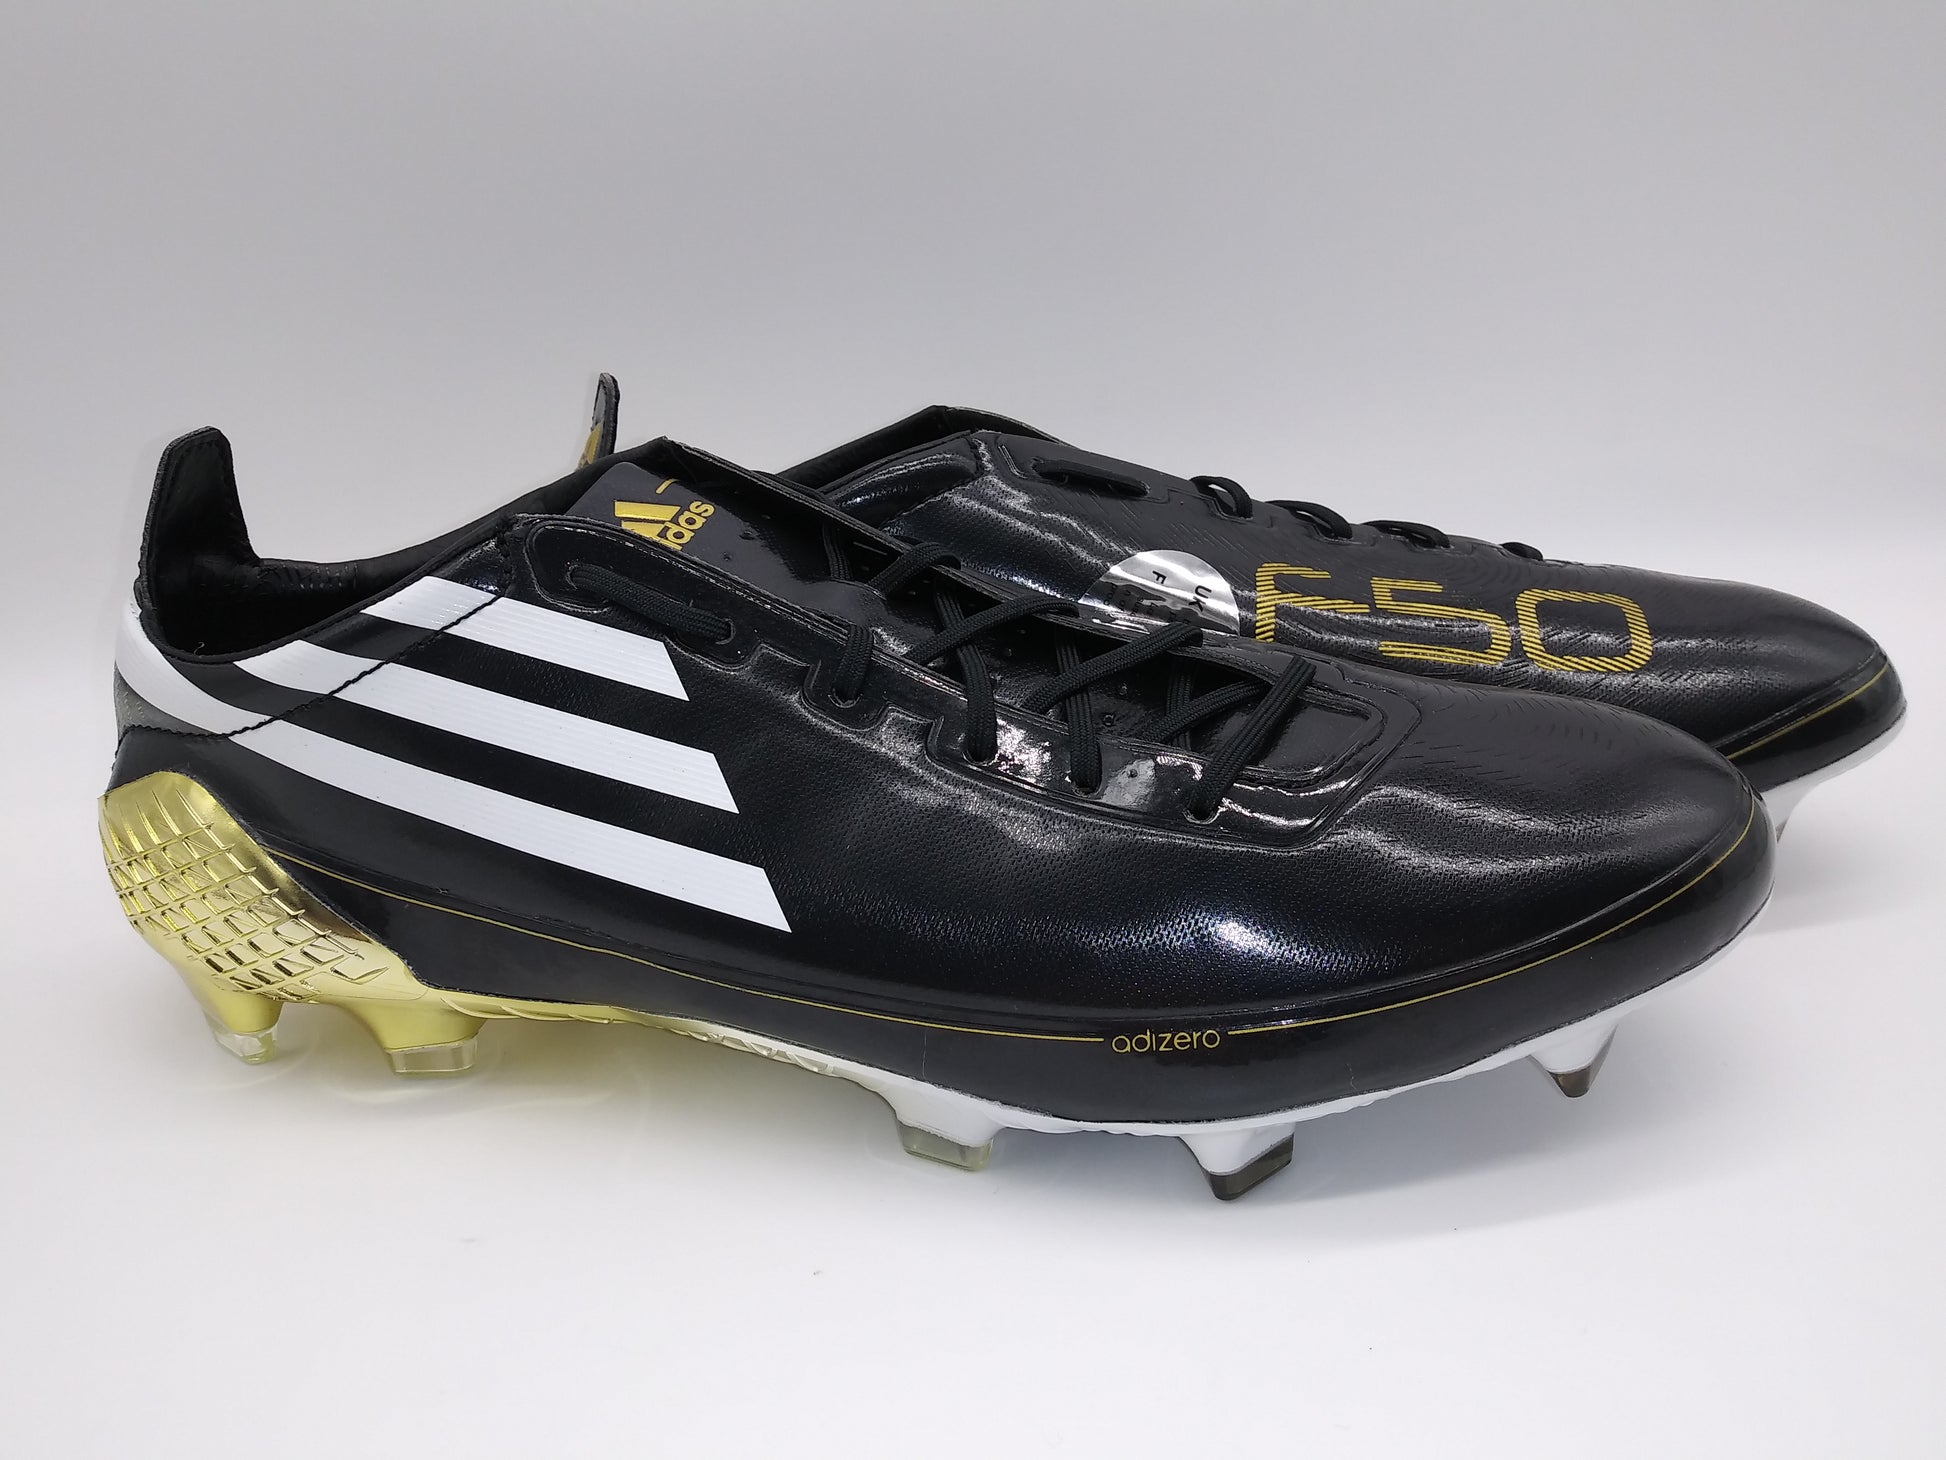 Adidas F50 Ghosted Adizero Black Gold – Villegas Footwear